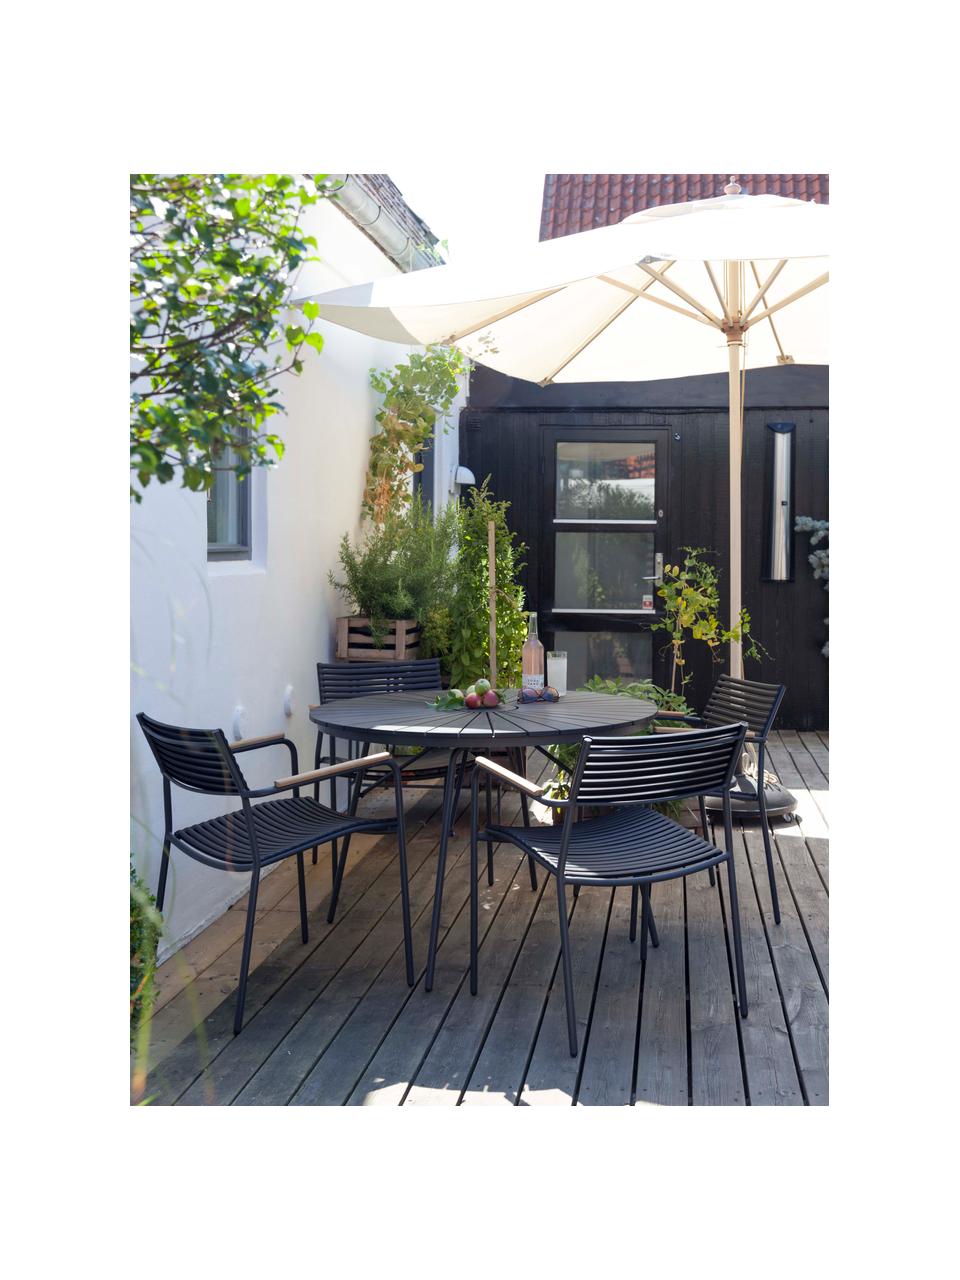 Ogrodowe krzesło z podłokietnikami Mood, Stelaż: aluminium malowane proszk, Czarny, S 60 x G 56 cm